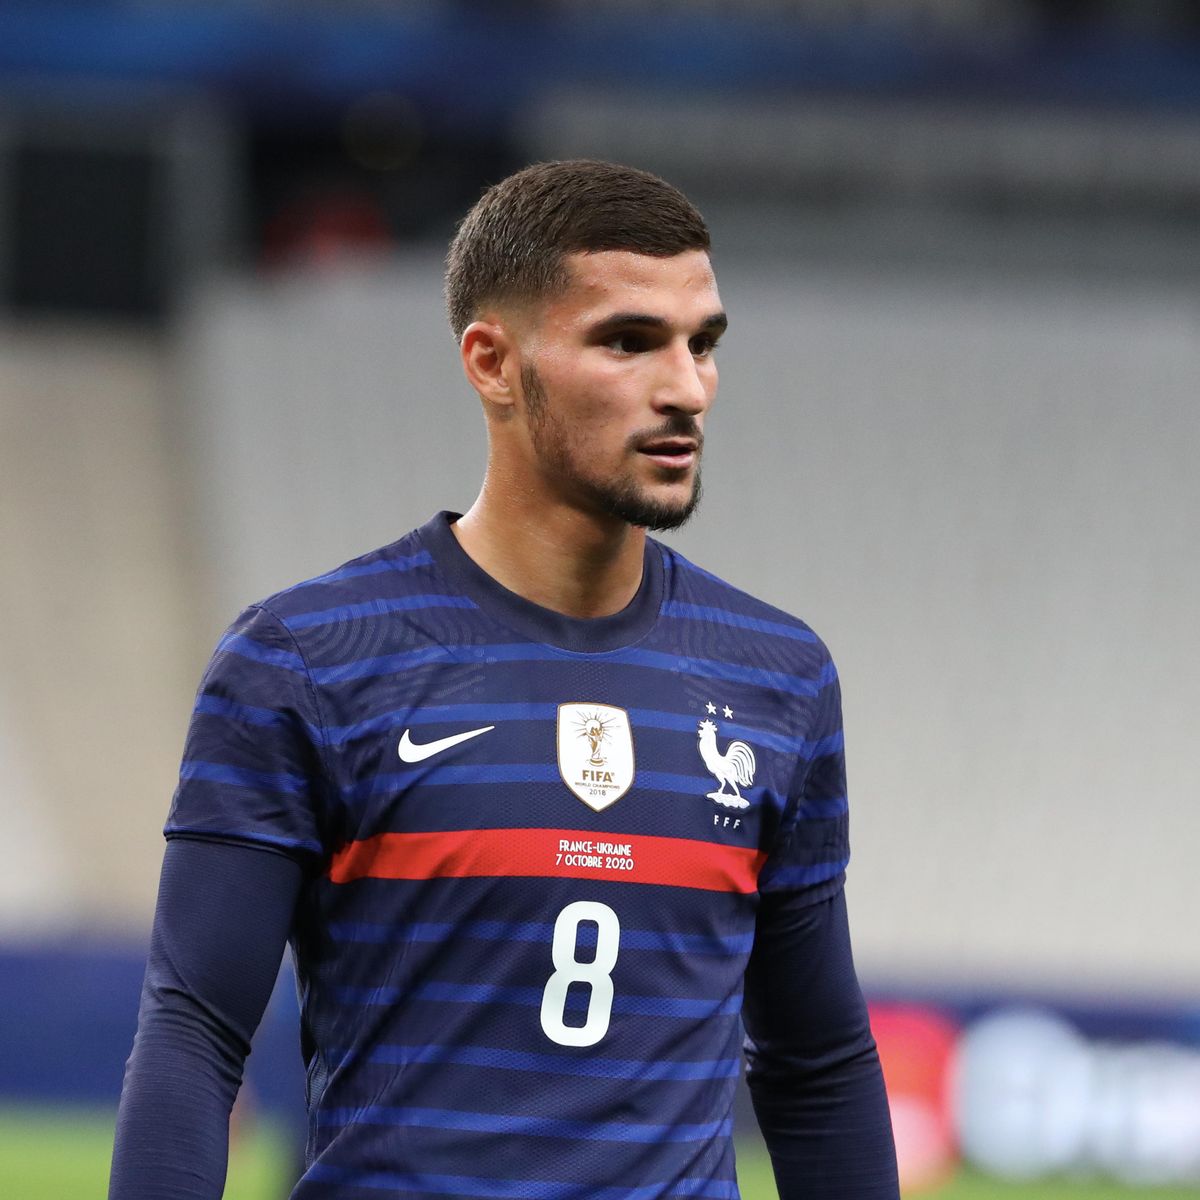 Houssem Aouar opts to play for Algeria